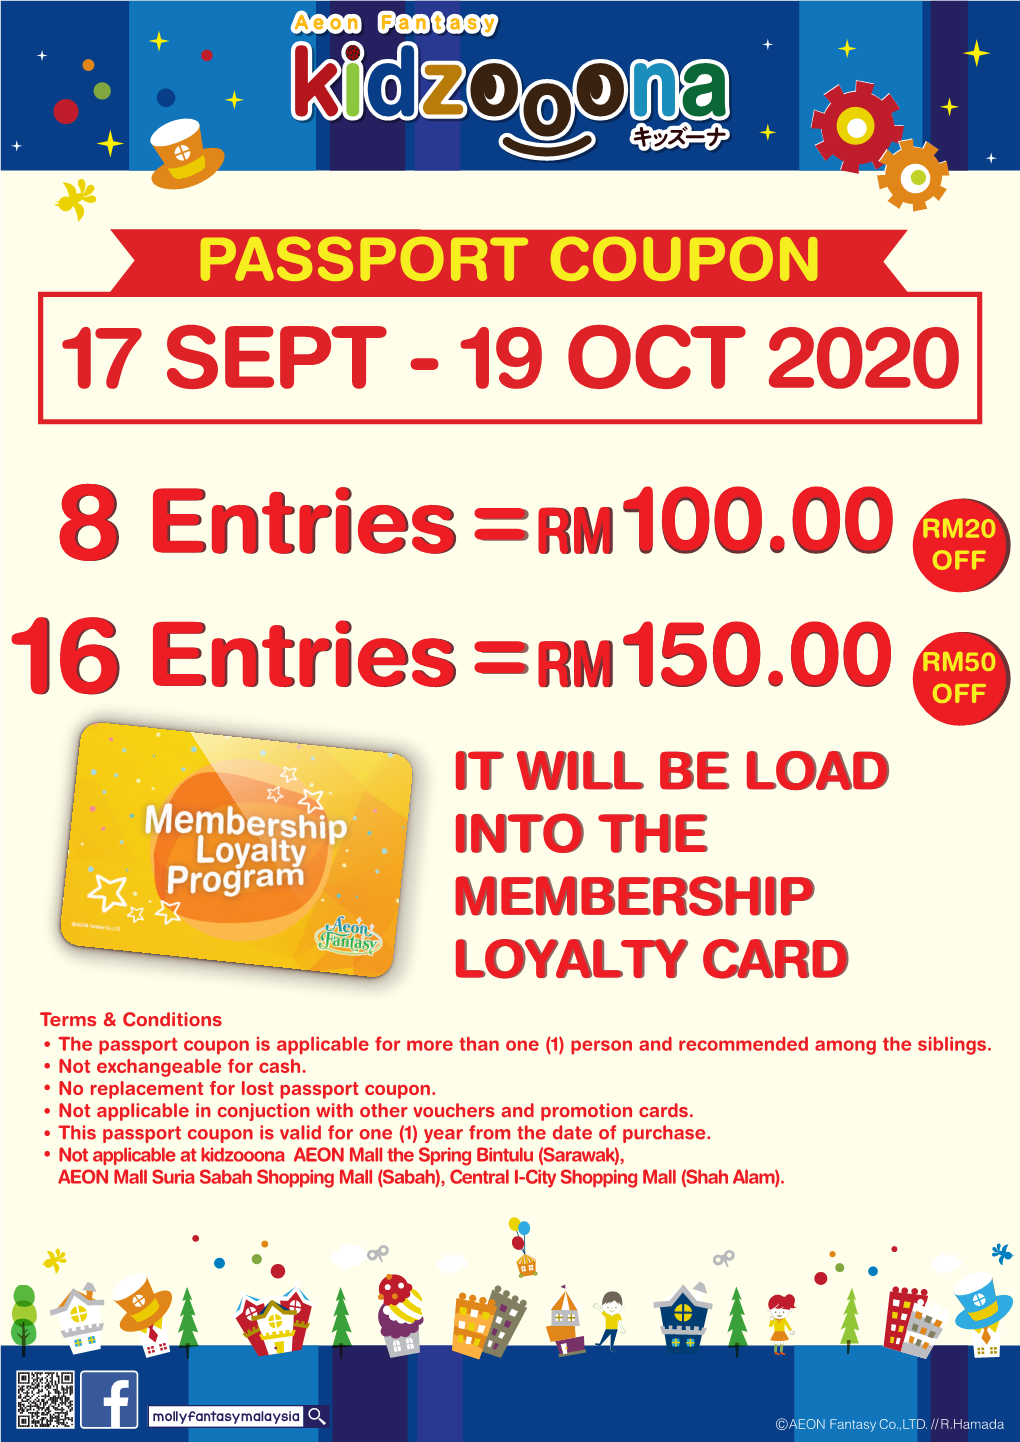 Passport Coupon 17 Sept - 19 Oct 2020